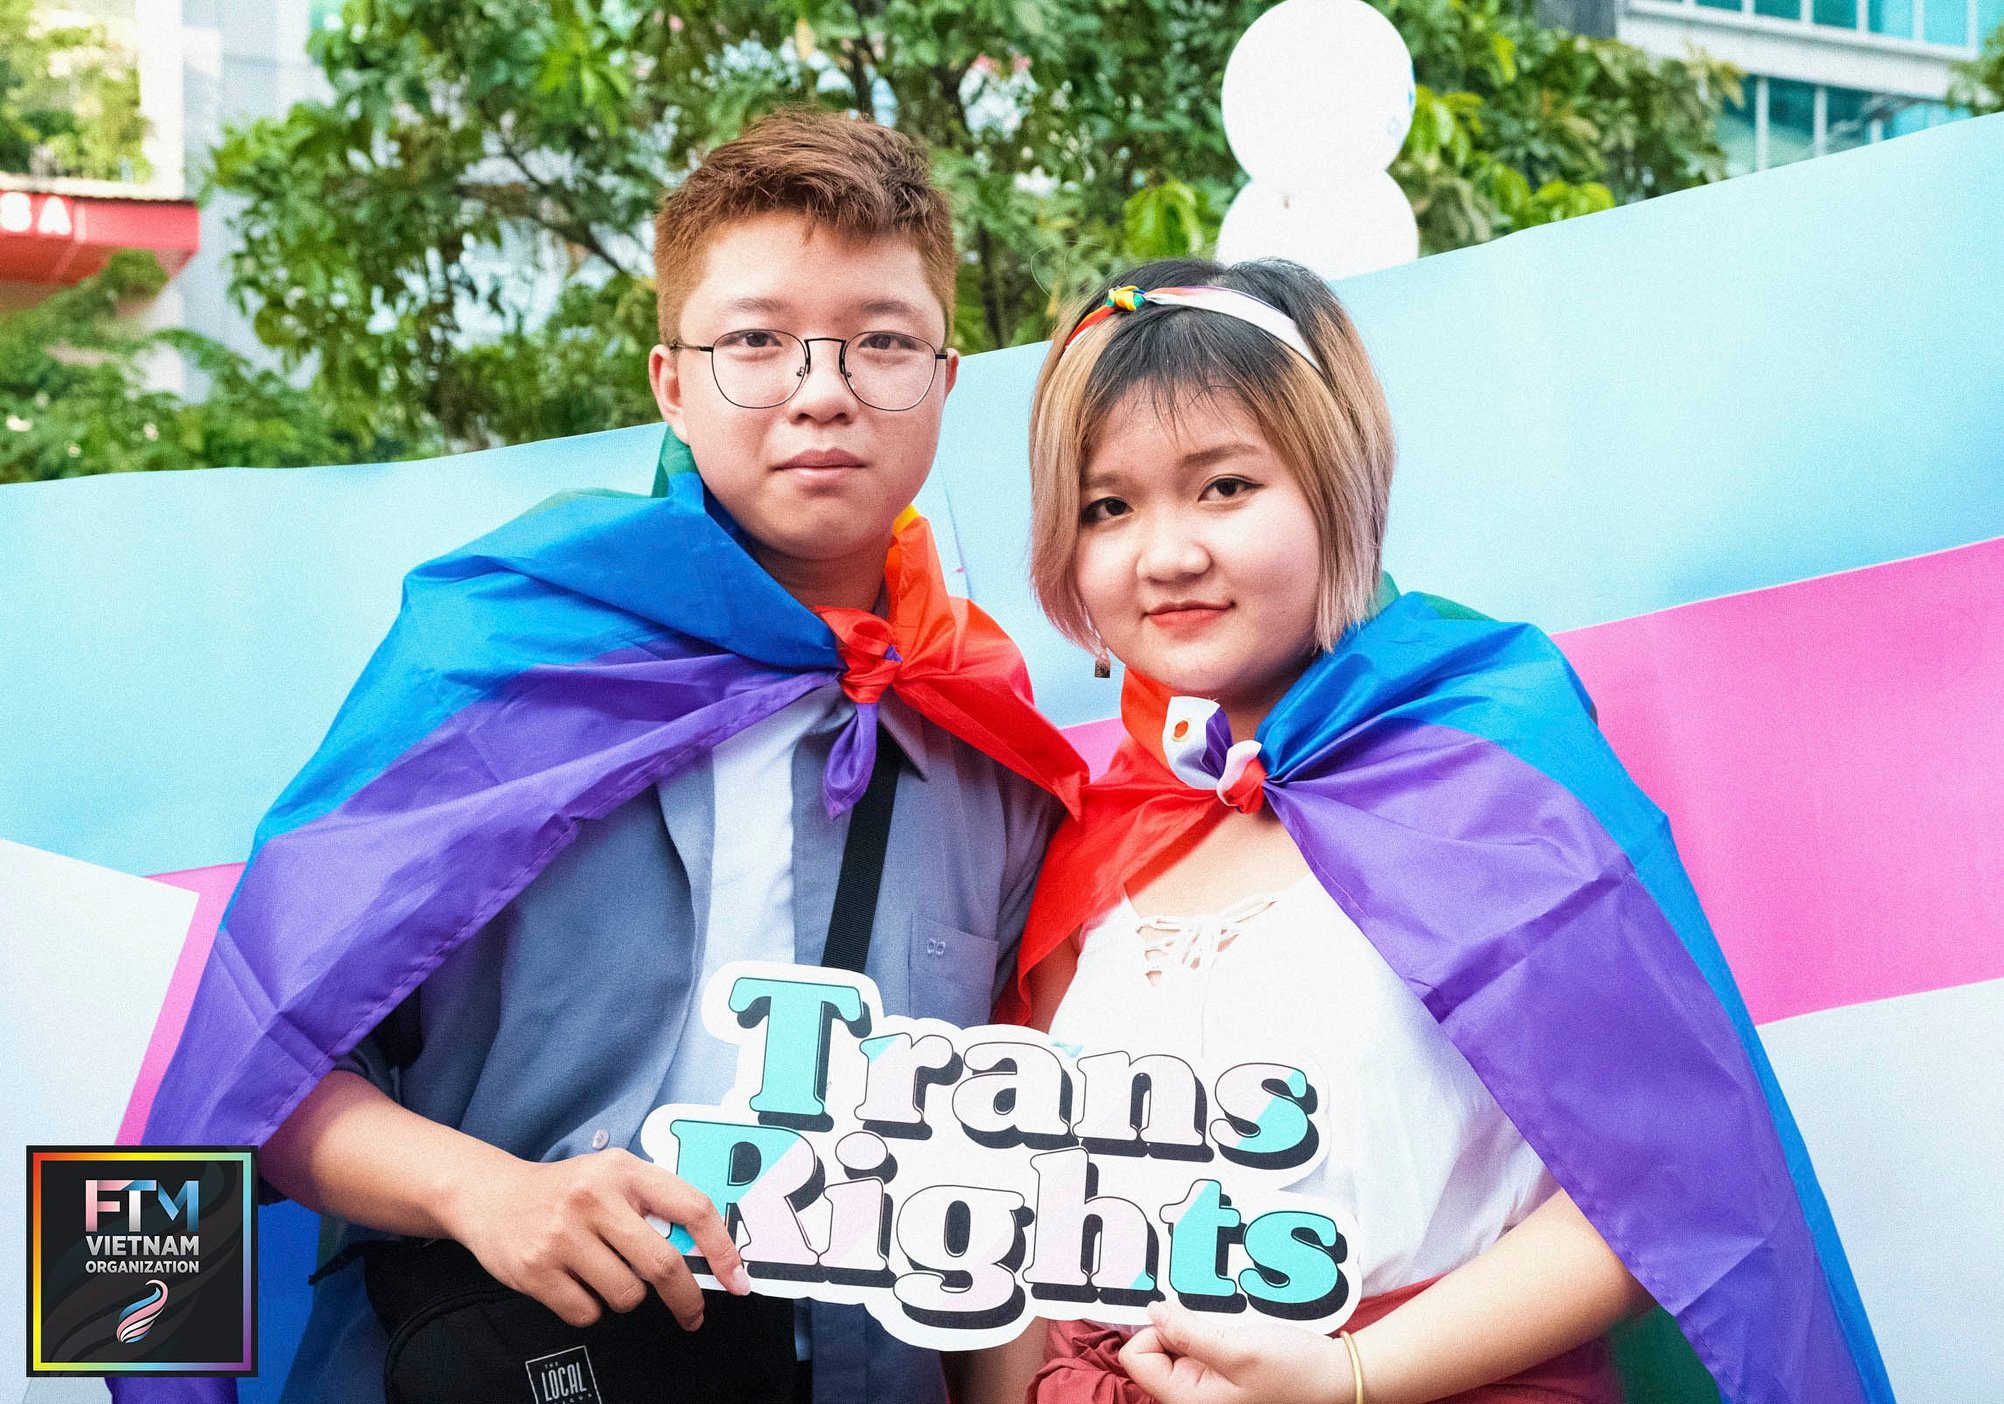 Quyền chuyển đổi giới tính: Cần nghĩ đến cộng đồng nửa triệu người